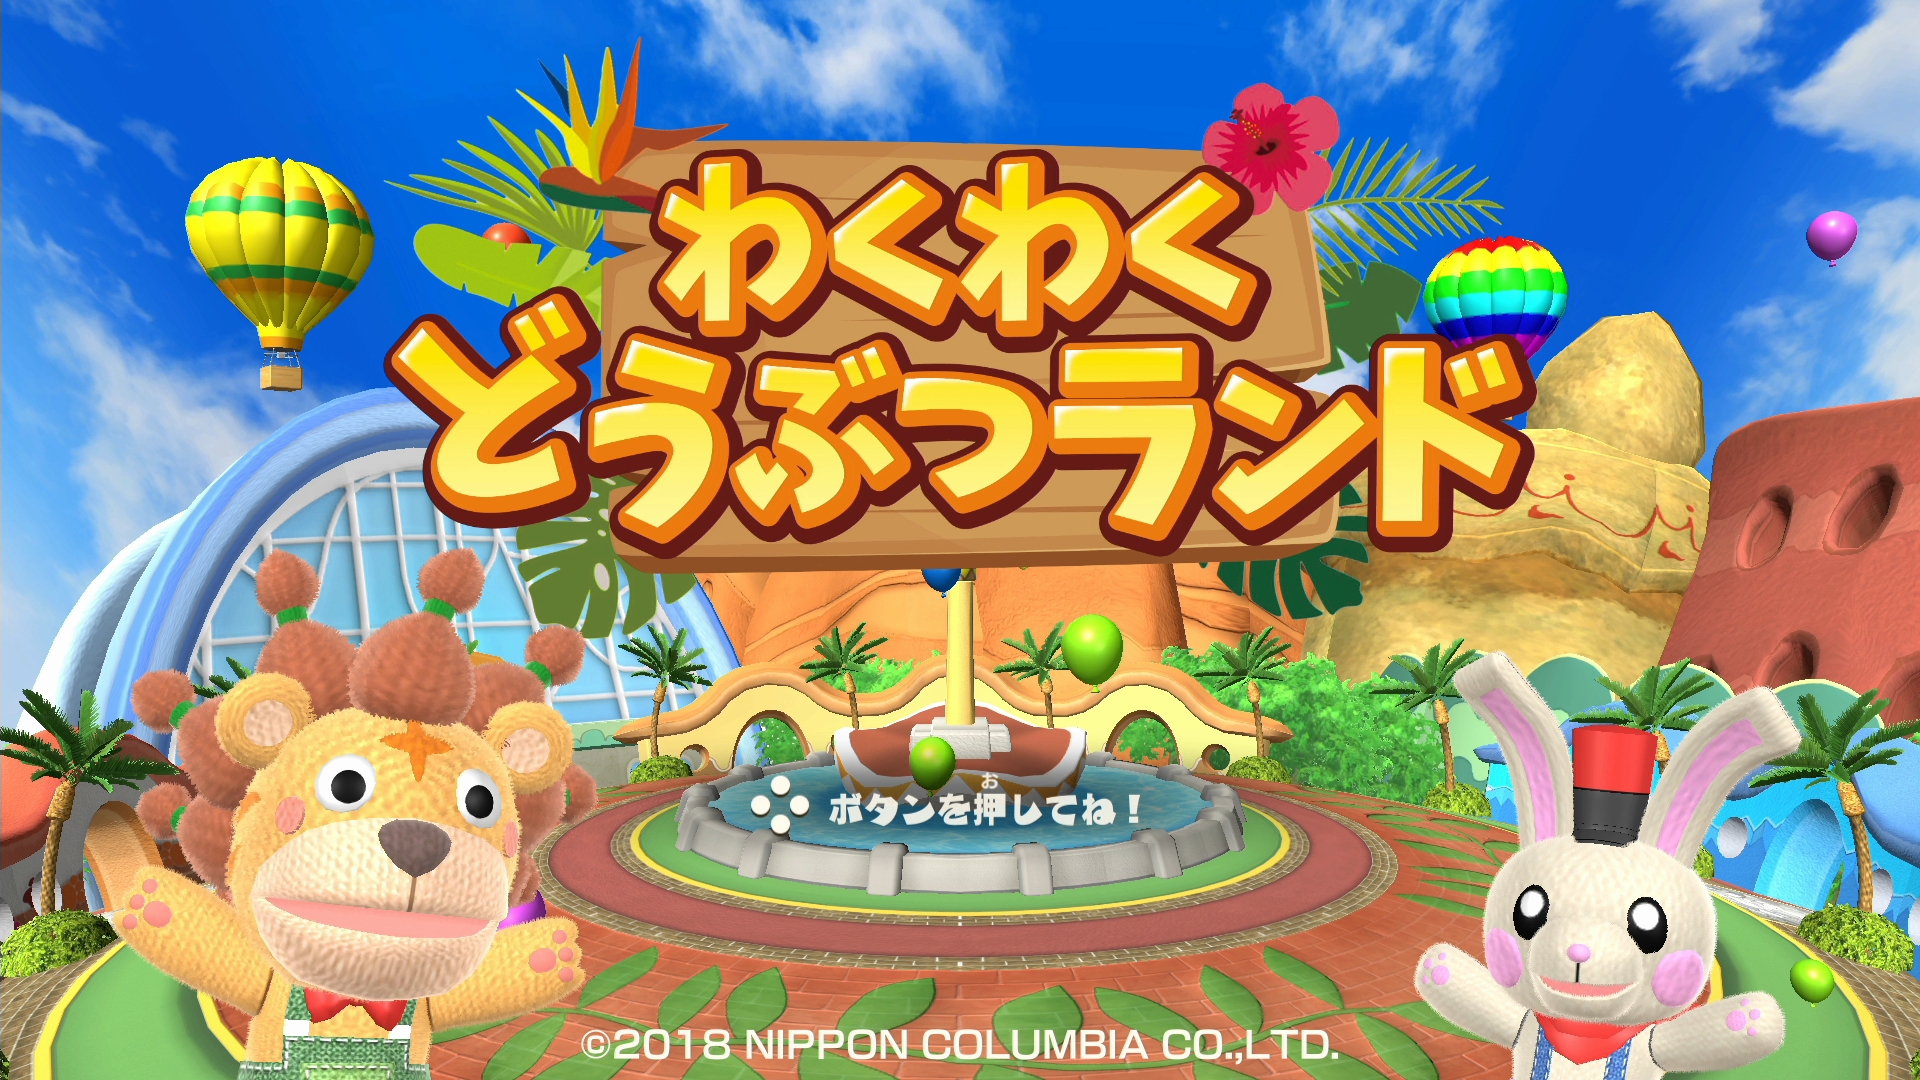 完全オリジナルの新作パーティゲームnintendo Switch わくわくどうぶつランド 18 年7 月26 日に発売決定 日本コロムビア株式会社のプレスリリース